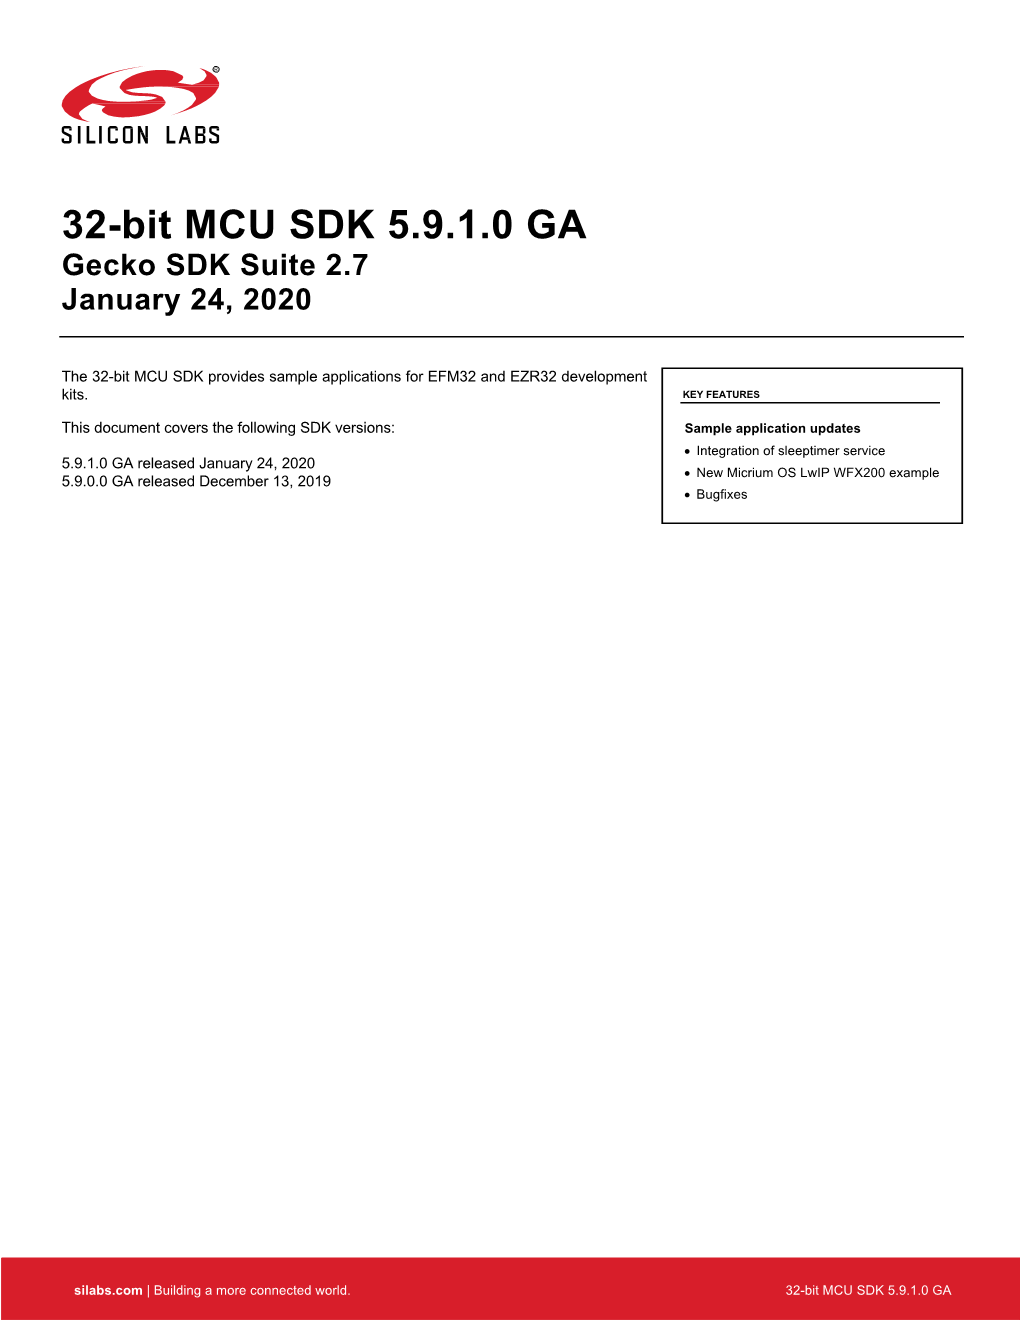 32-Bit MCU SDK 5.9.1.0 GA Gecko SDK Suite 2.7 January 24, 2020